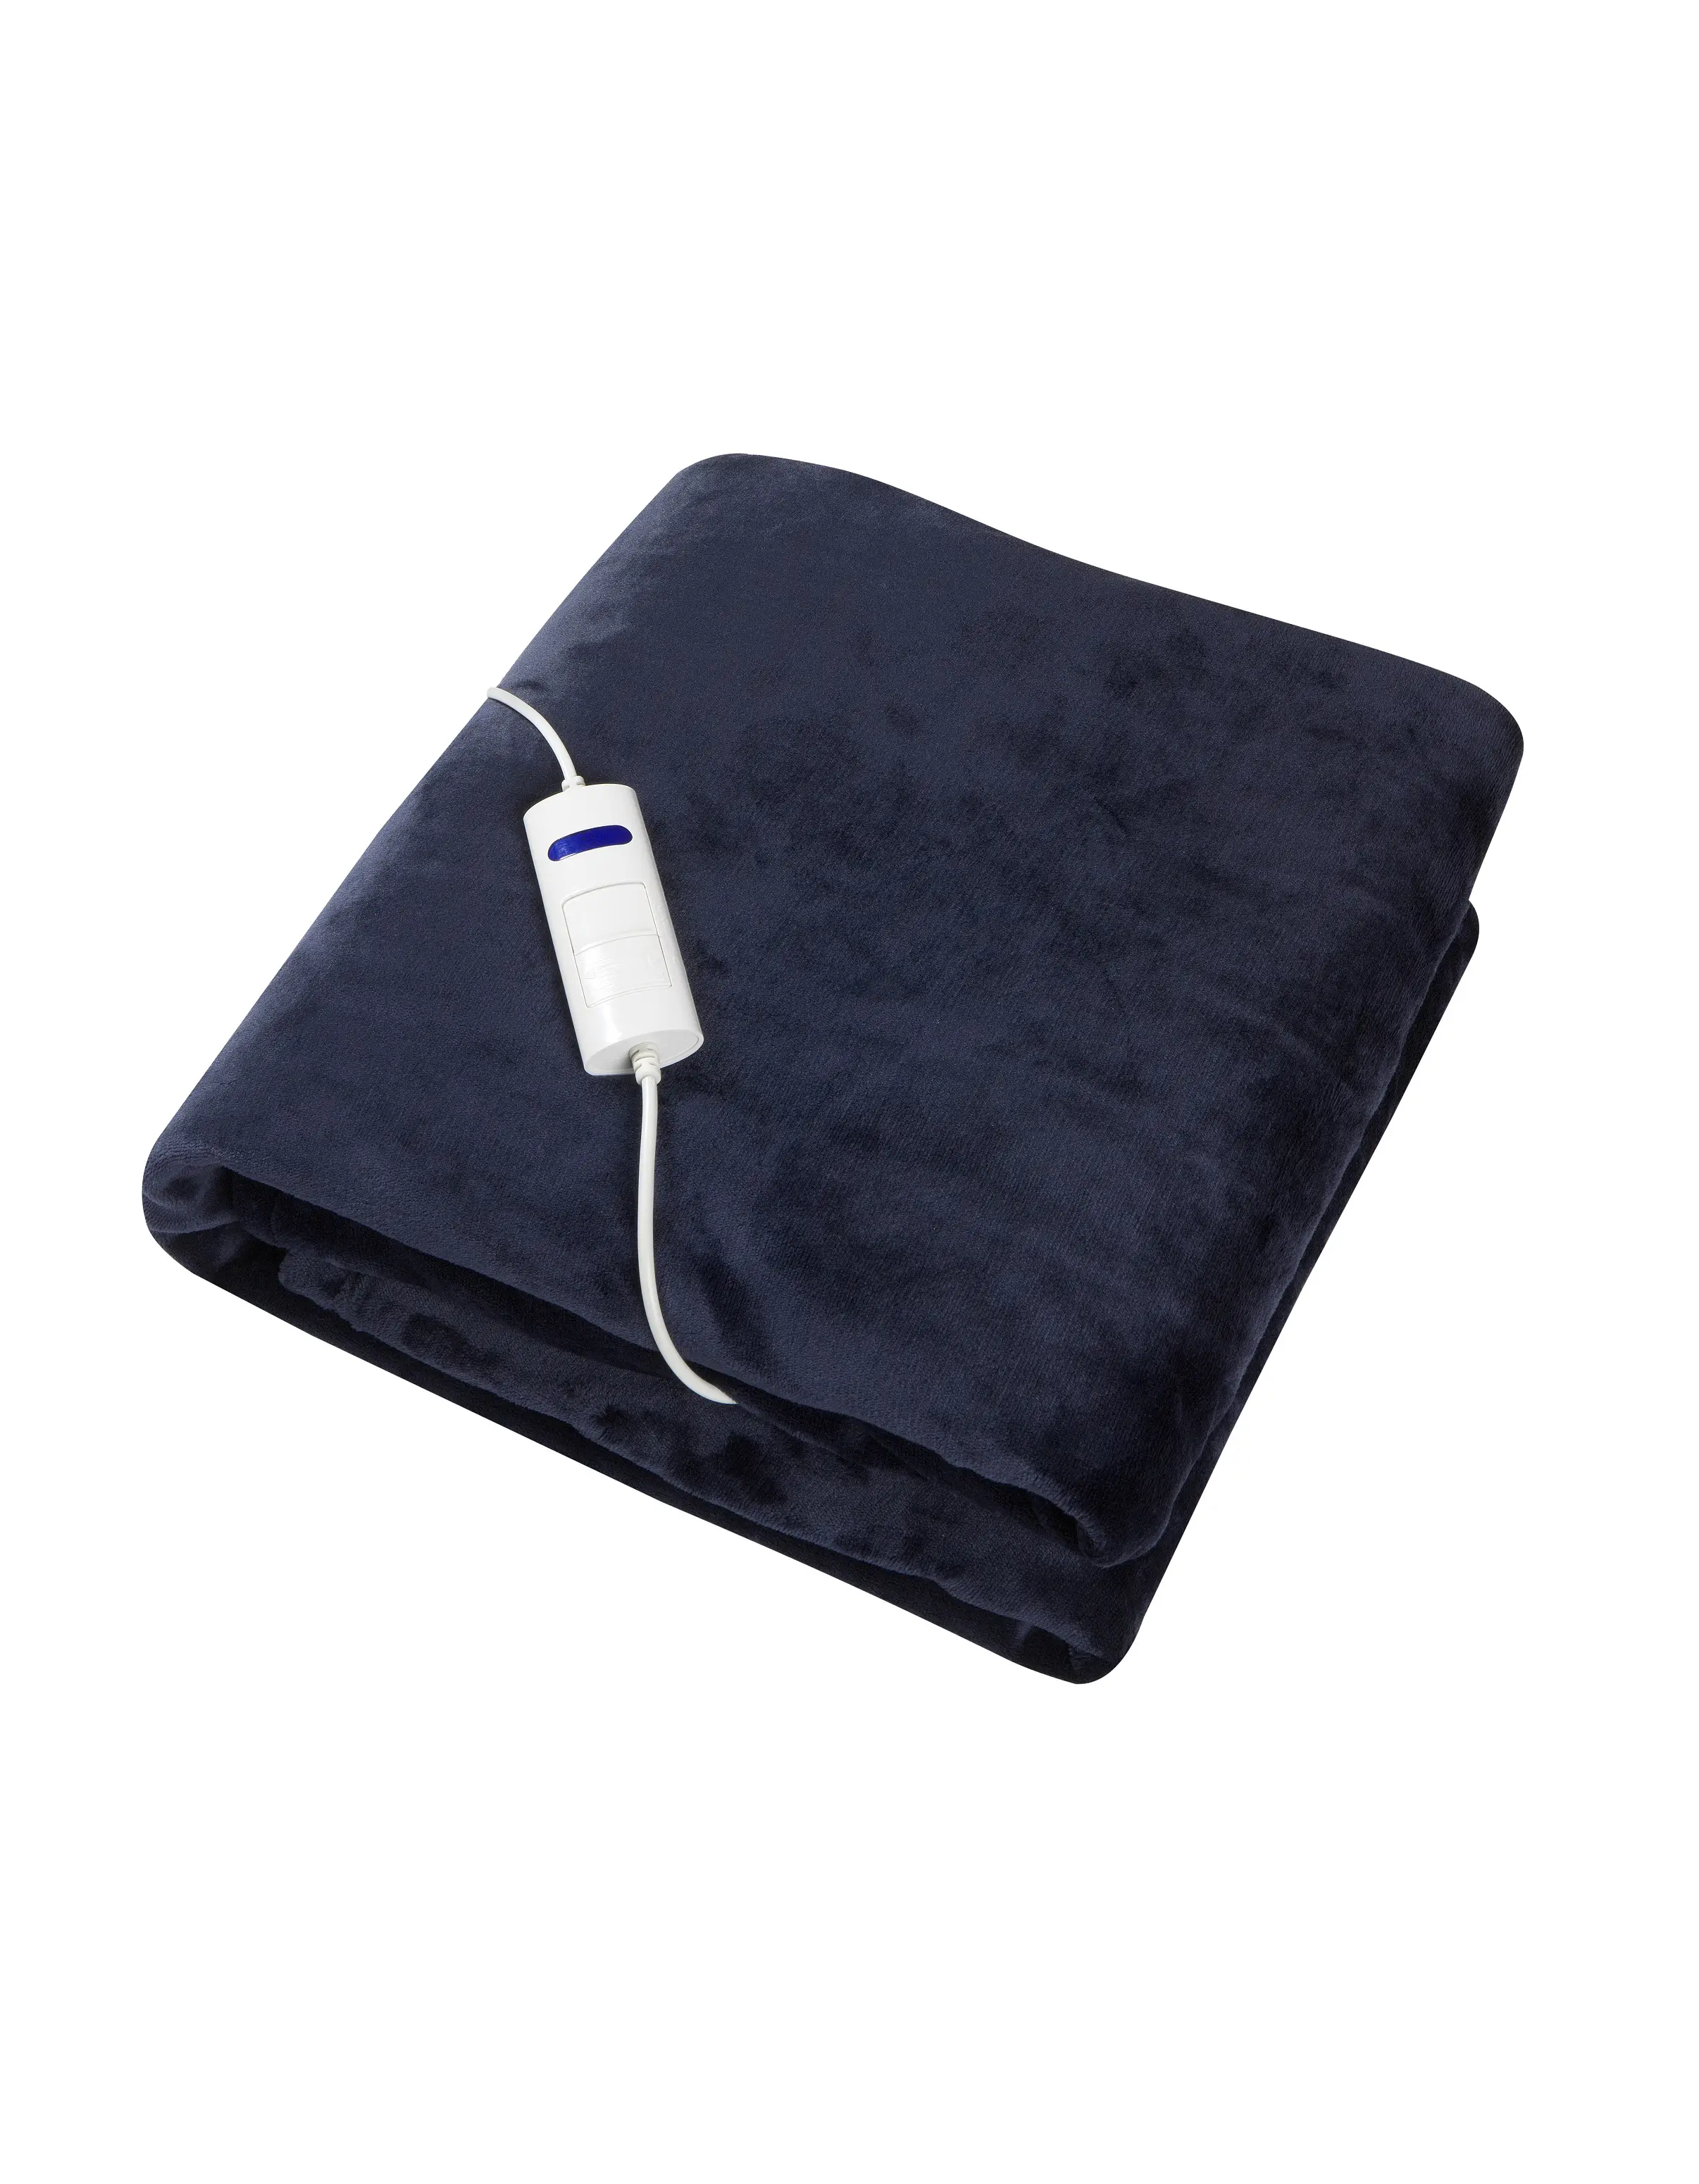 Blanket Selimut Penghangat Elektrik Ukuran Besar dengan Bulu Flanel Yang Nyaman Ke Tempat Tidur untuk Musim Dingin